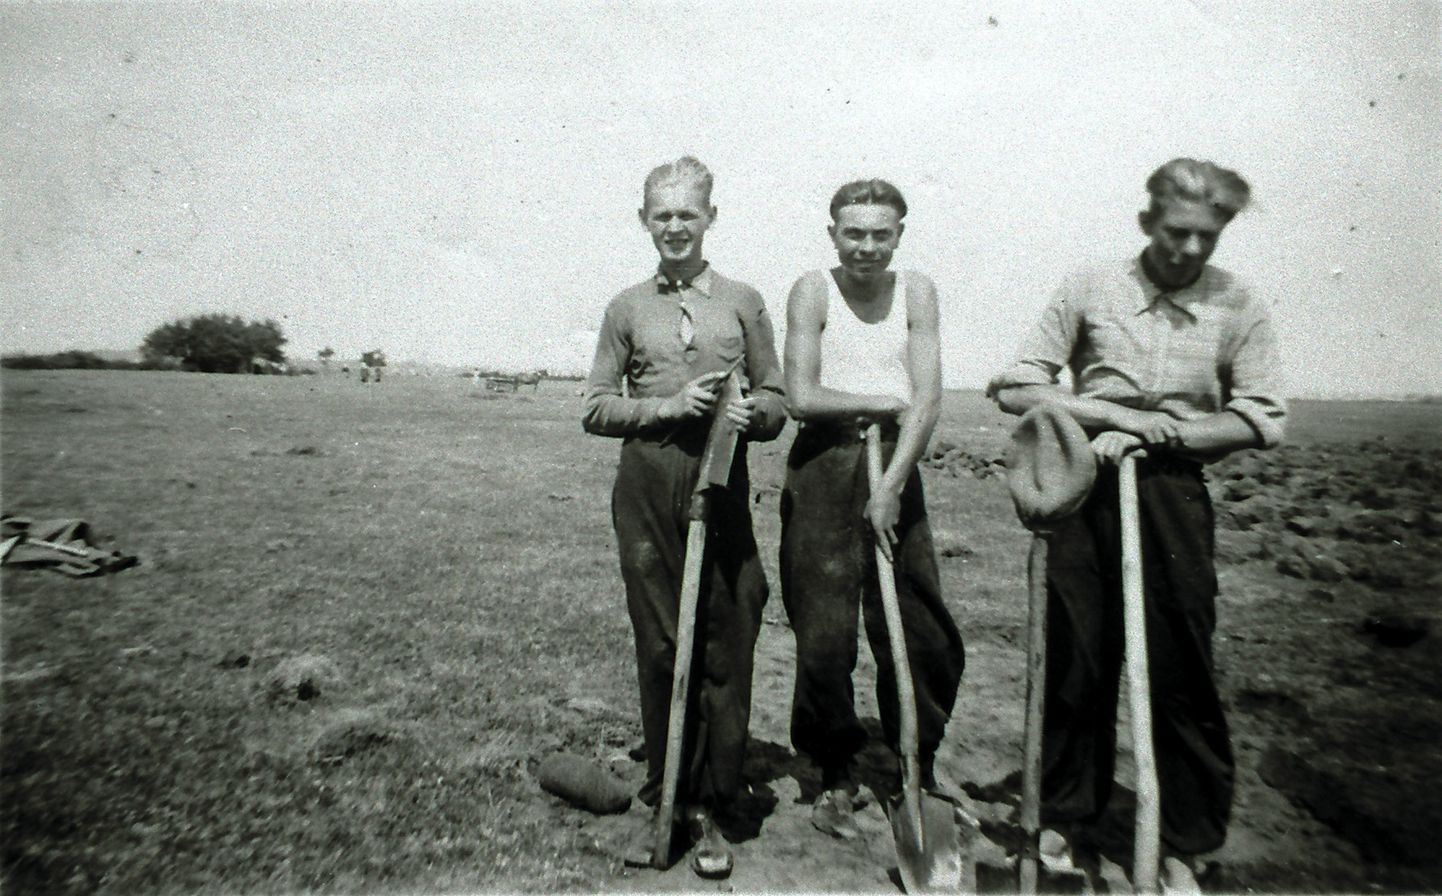 LABIDAMEHED: Töölised Roomassaare lennuvälja ehitusel 1940. aastal. Foto on pärit Vassili Mägi kogust, kelle isa Sergei on üks pildil kujutatud töömeestest.